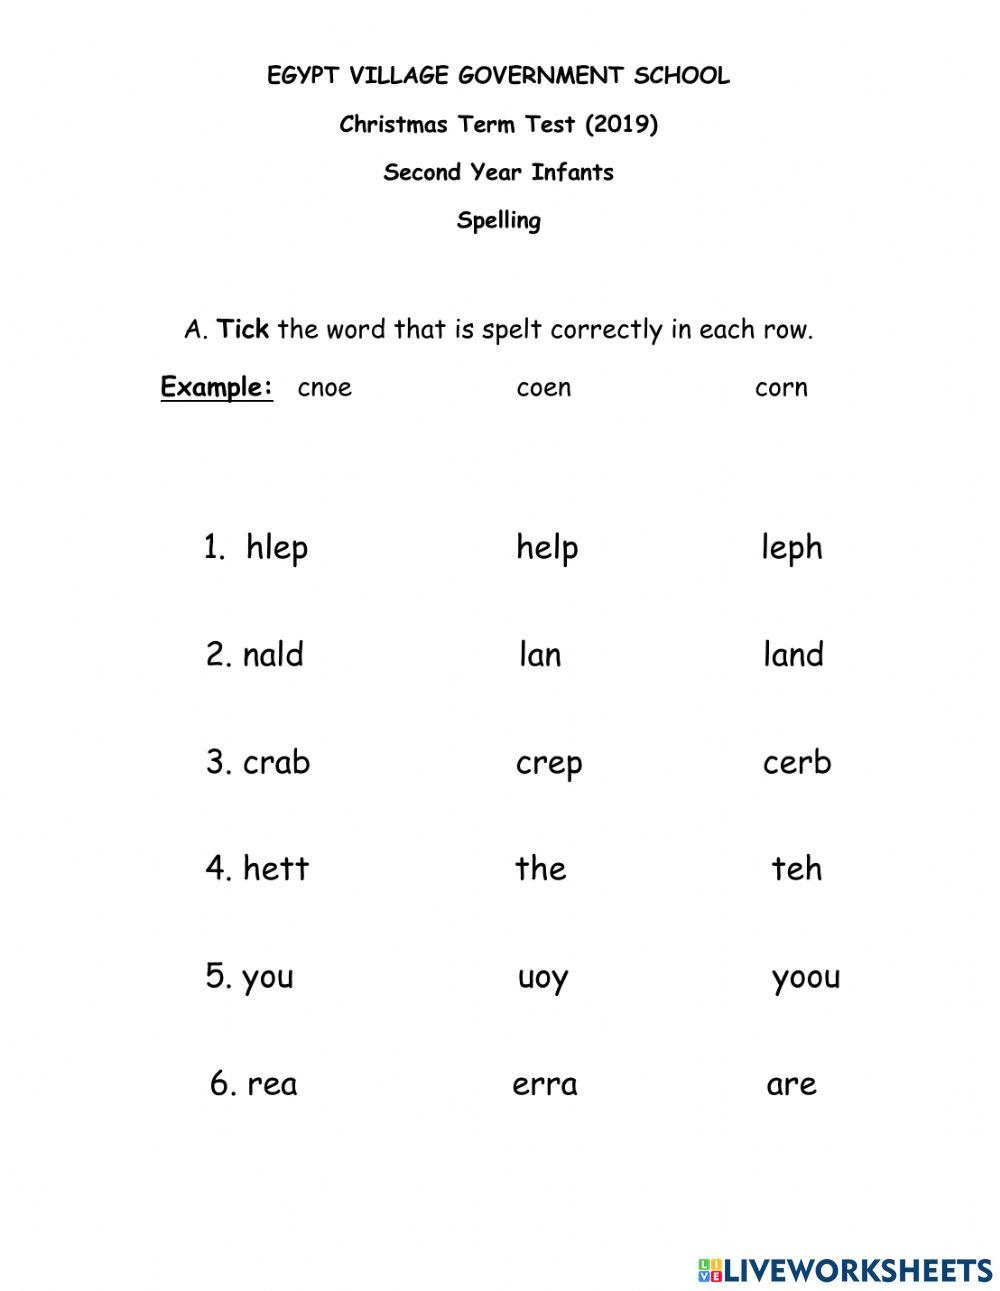 Spelling Assessment